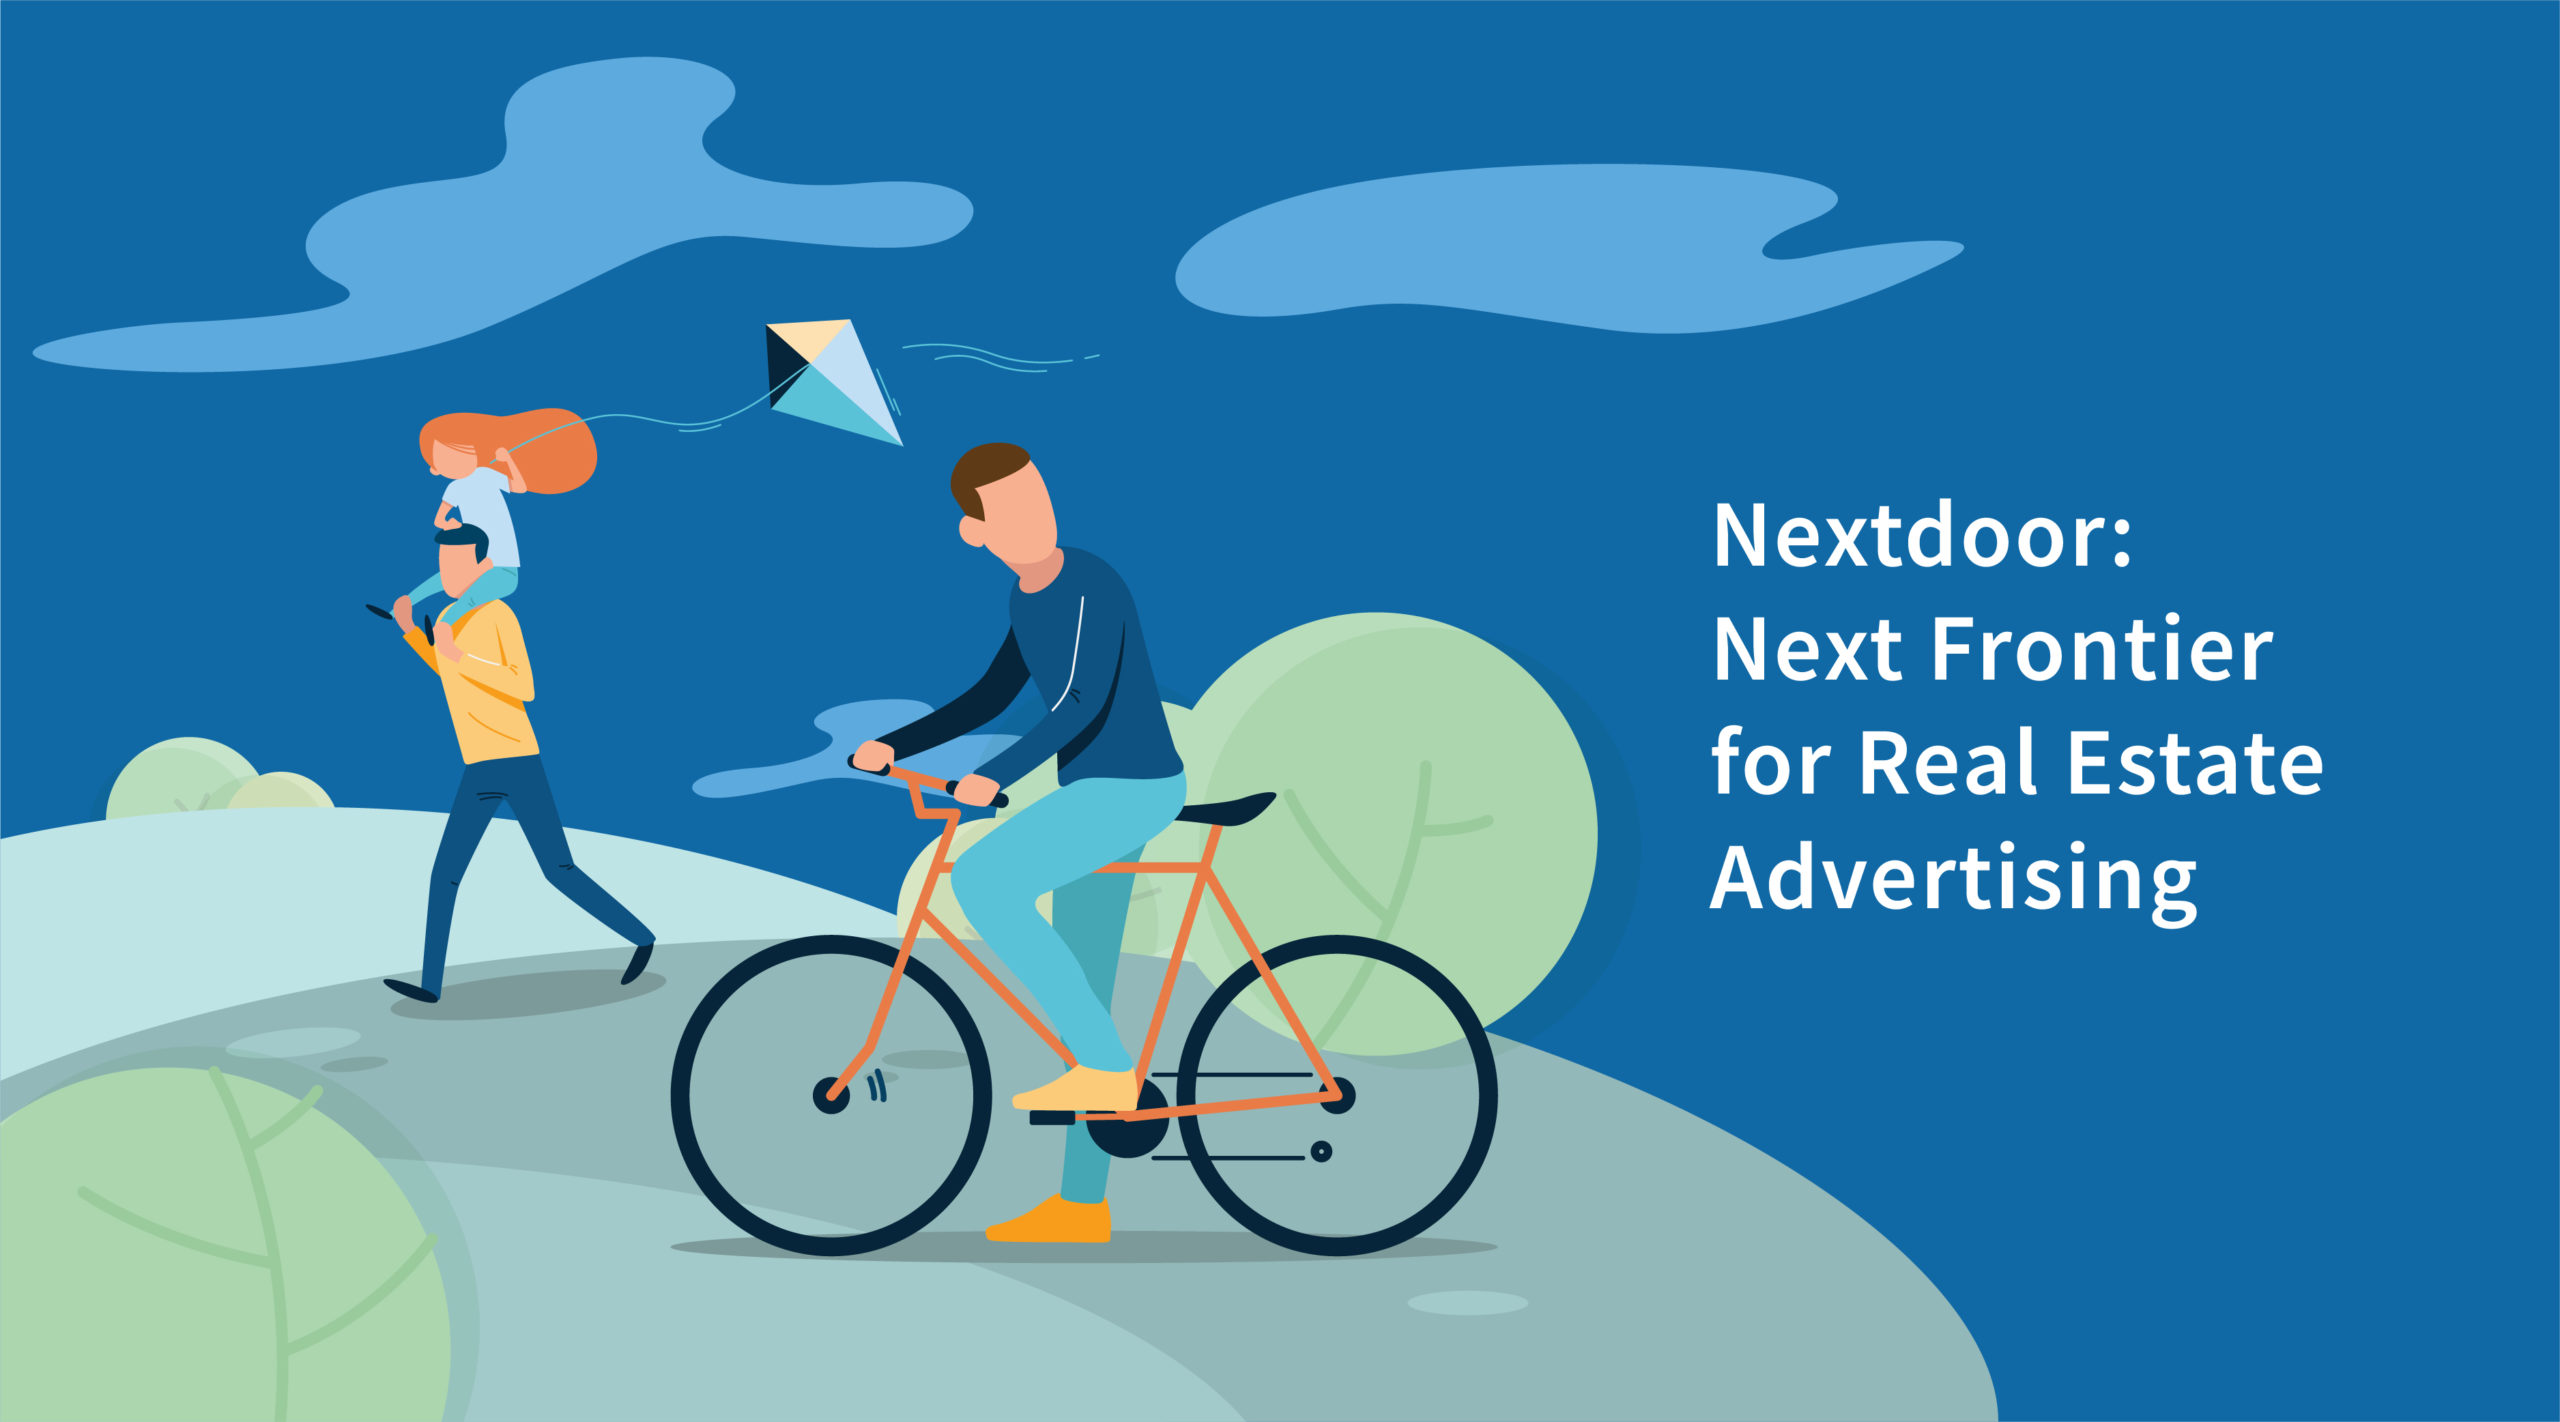 Nextdoor: Next Frontier for Real Estate Advertising